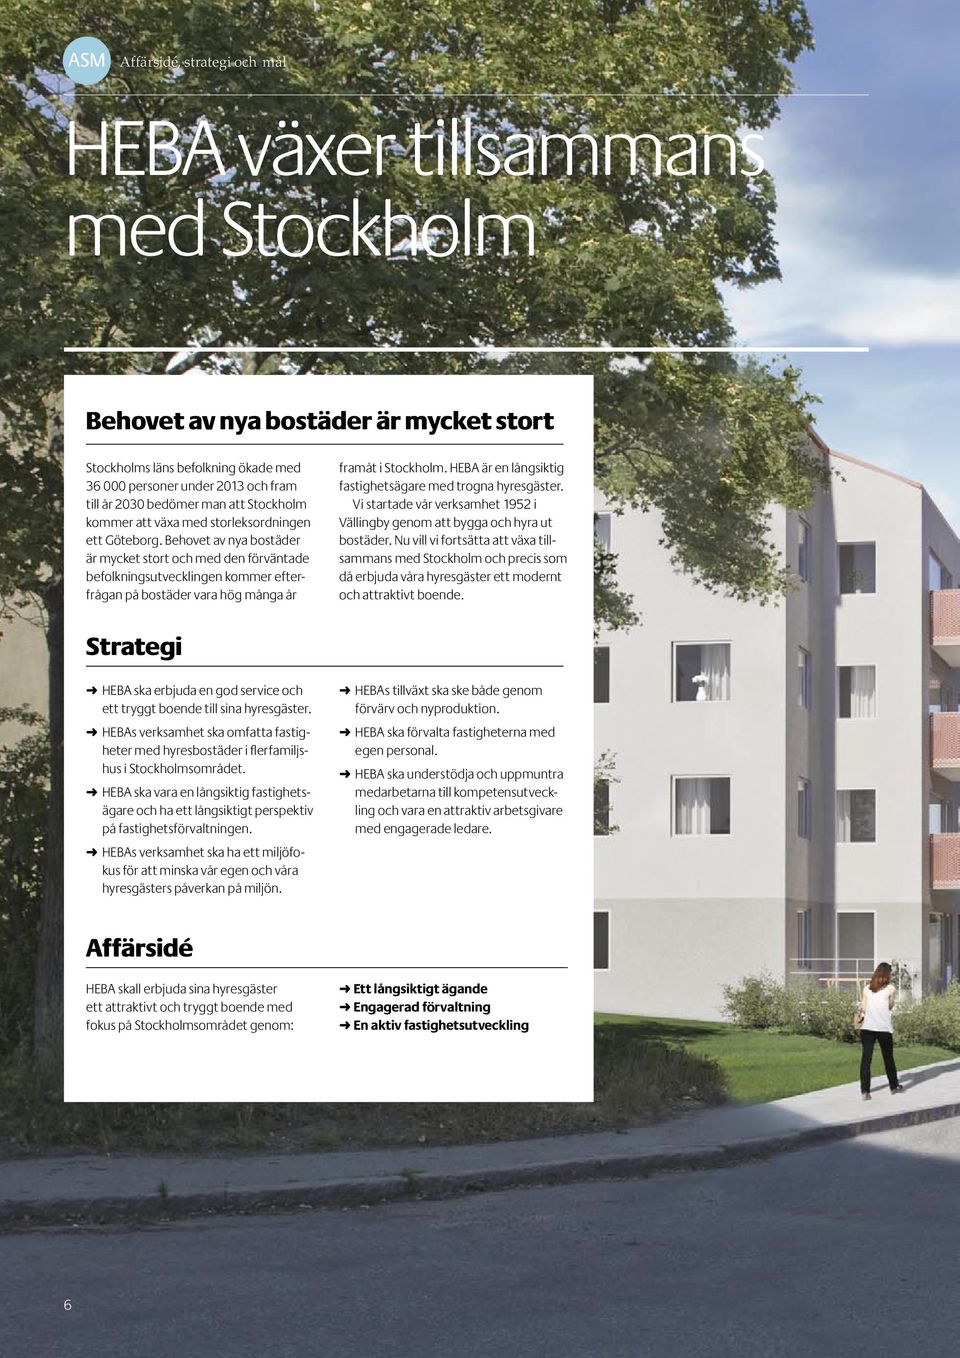 Behovet av nya bostäder är mycket stort och med den förväntade befolkningsutvecklingen kommer efterfrågan på bostäder vara hög många år framåt i Stockholm.